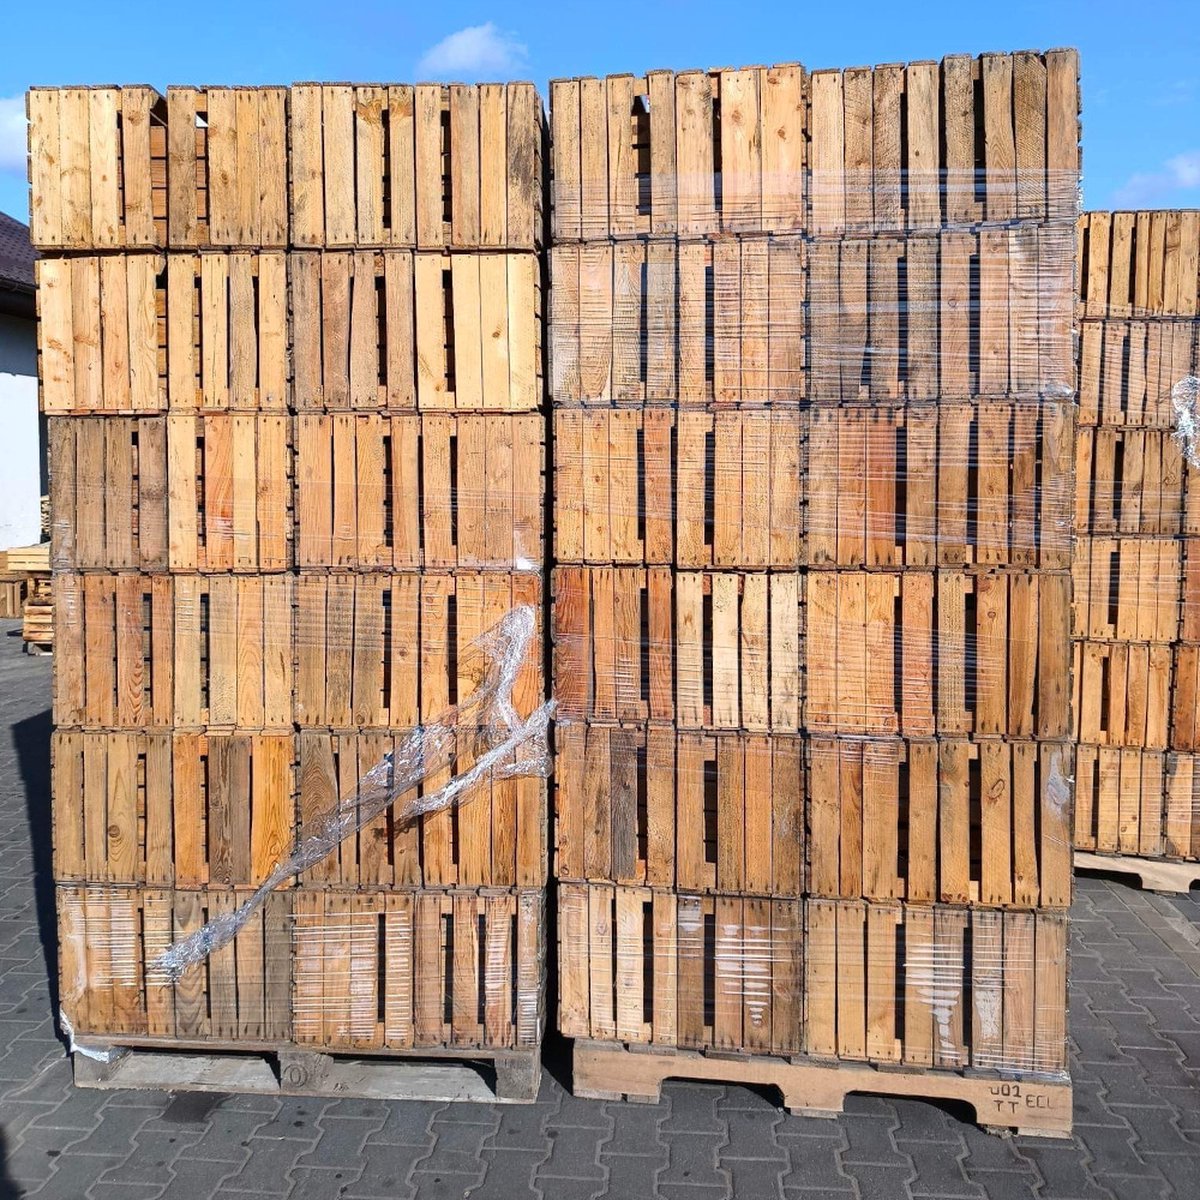 54 stuks fruitkisten van hout 50x40x30 cm - 1x pallet oude kratten